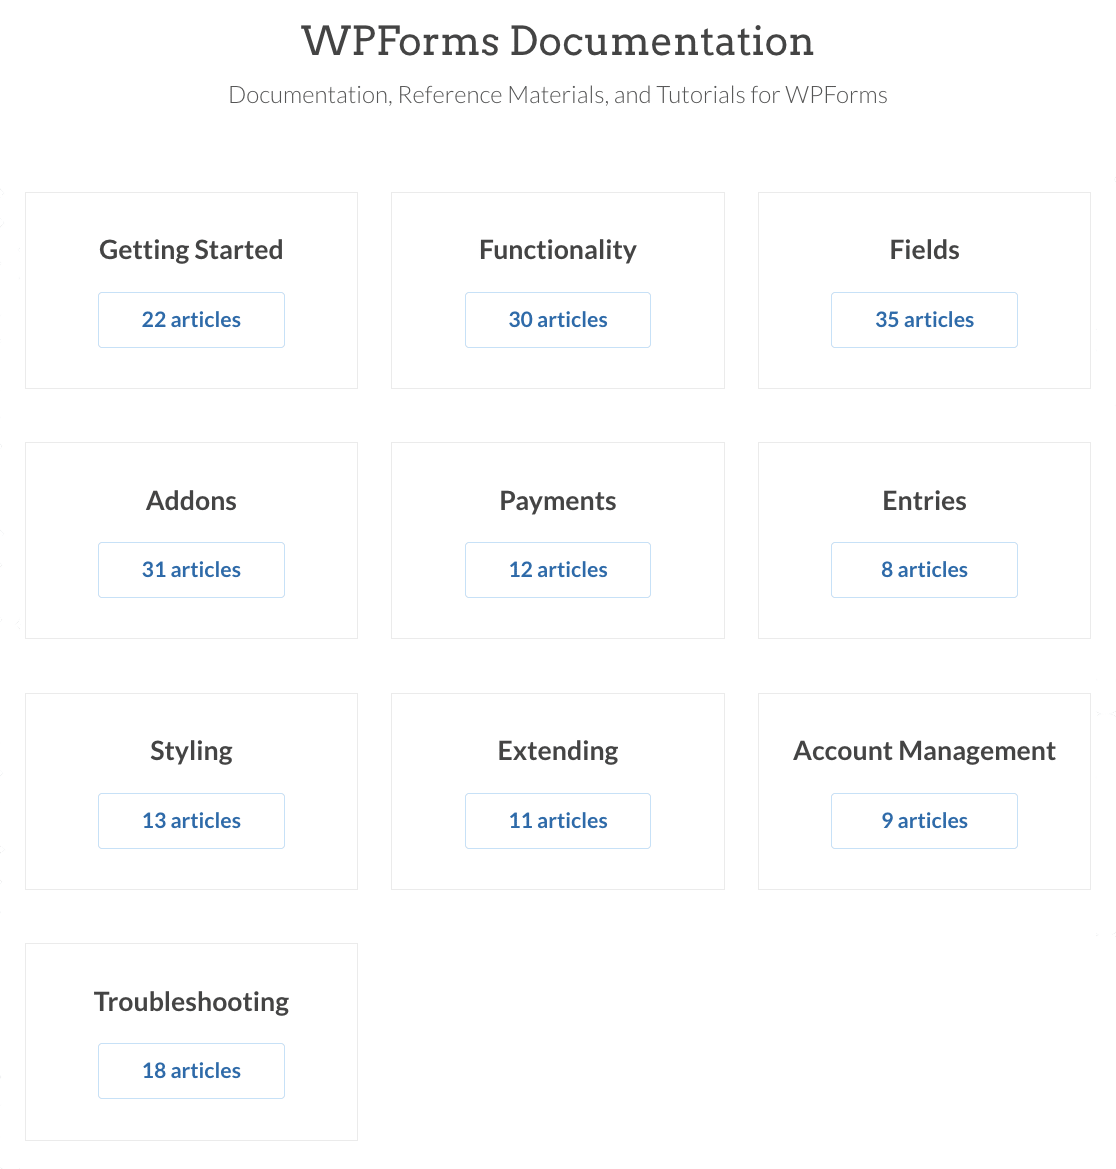 WPForms documentation